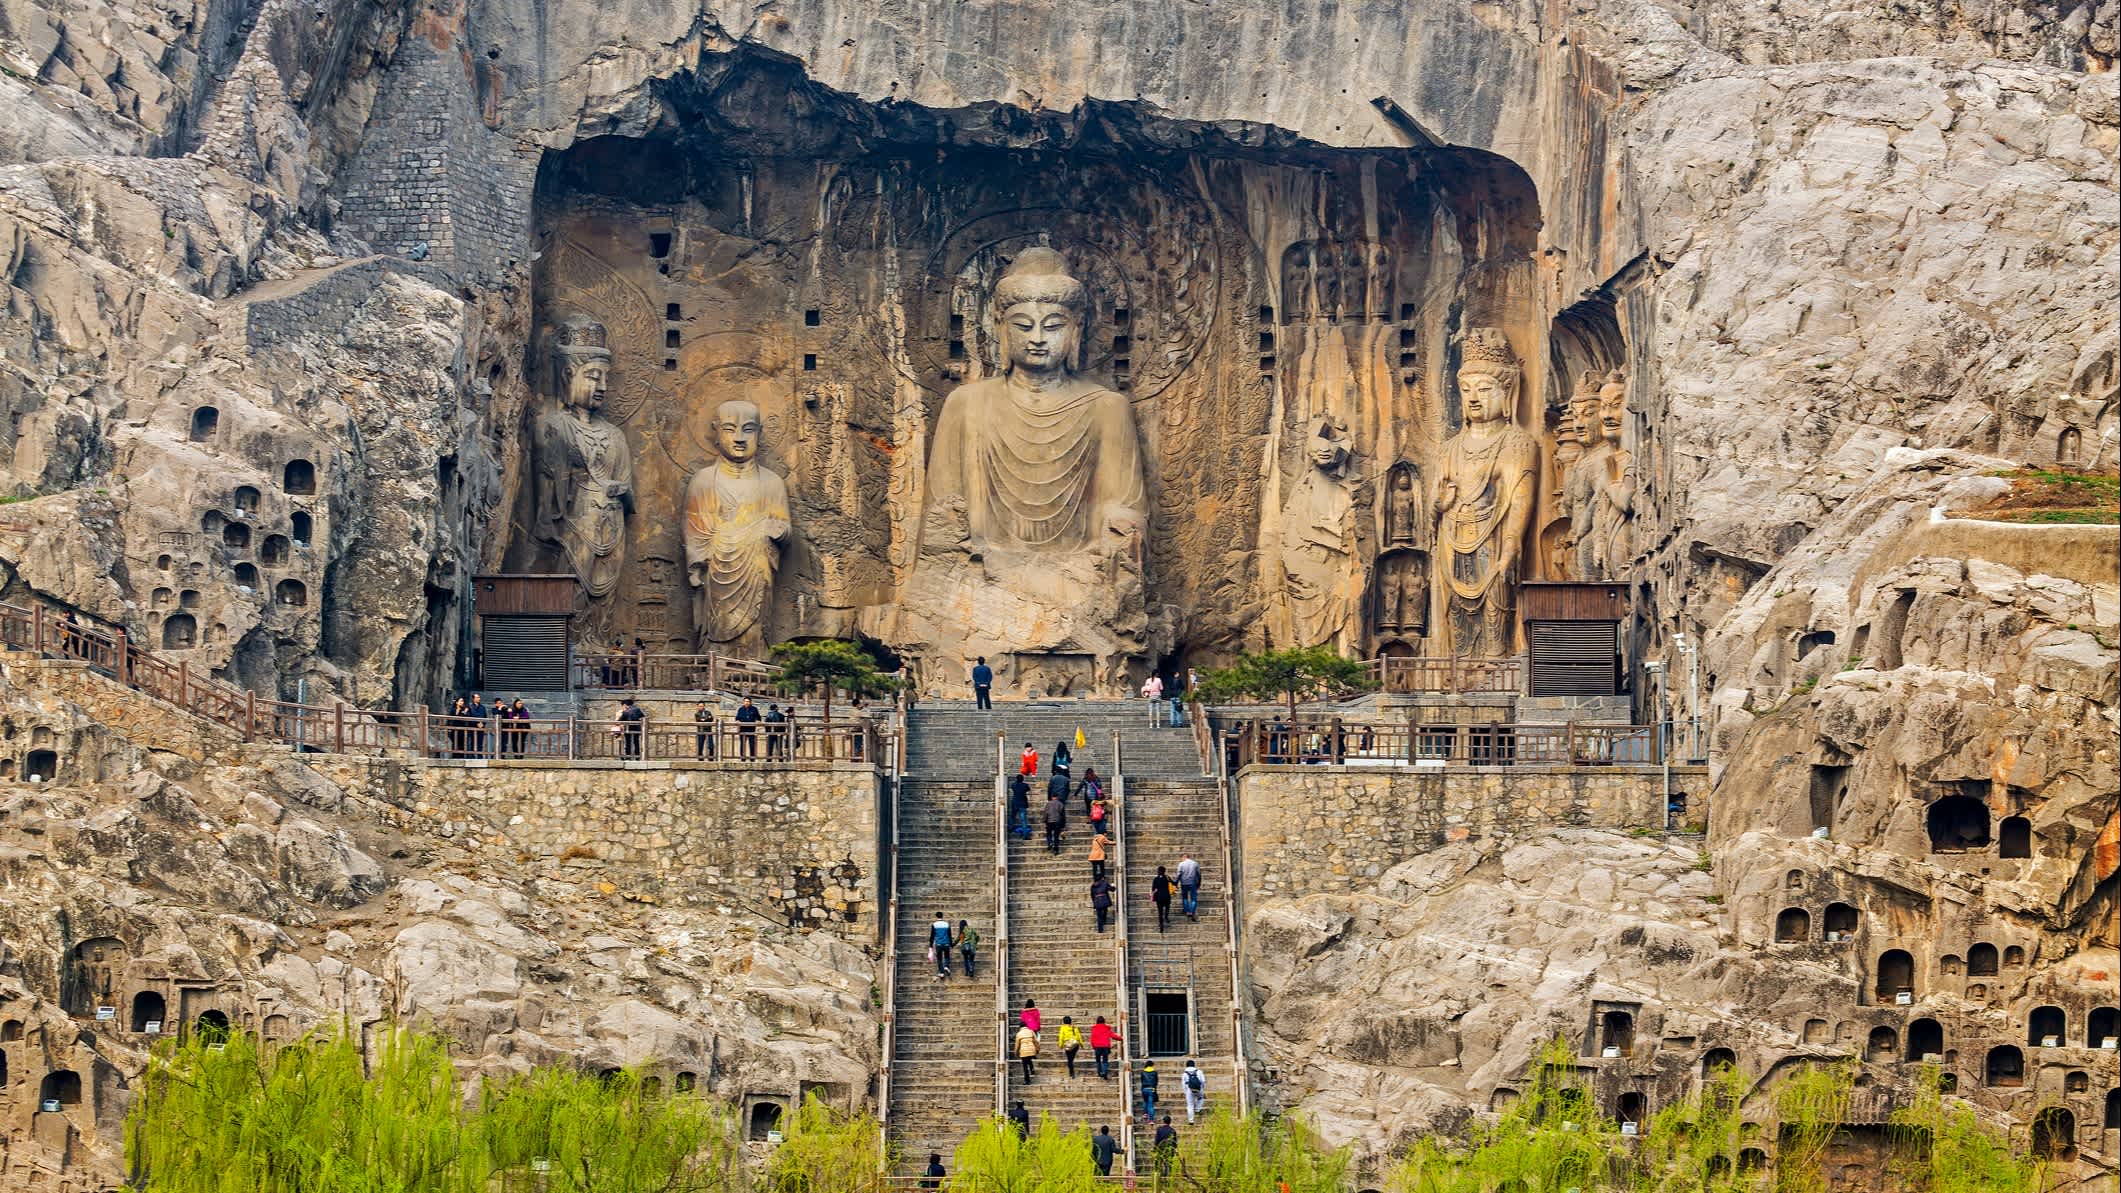 Treppen zur Buddhastatue in Luoyang